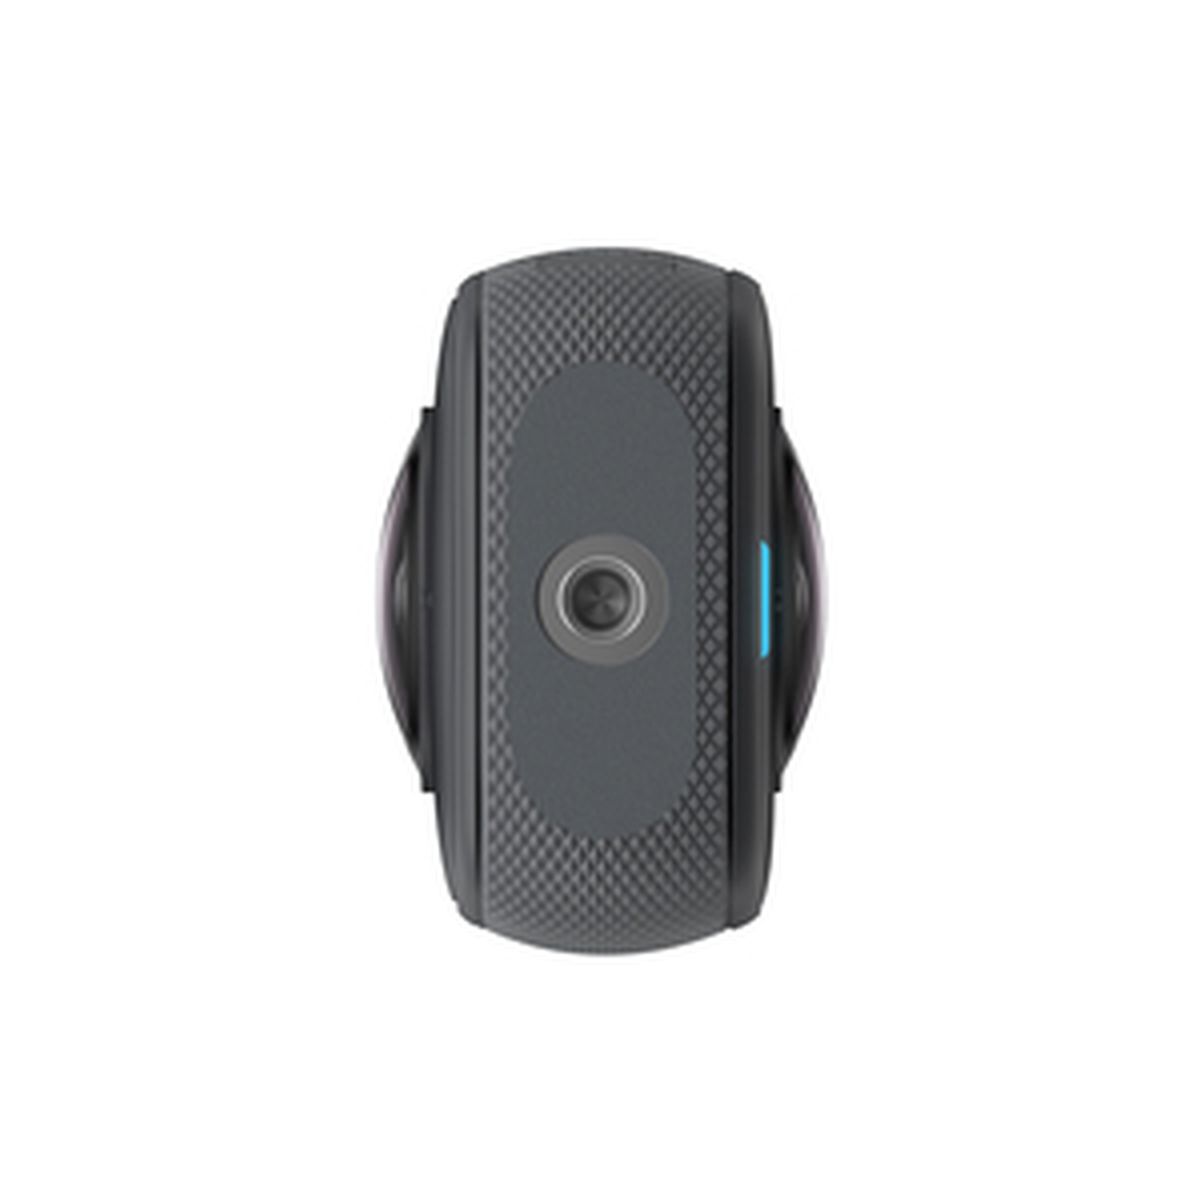 INSTA360 X3 All-Purpose-Kit 360° Kamera 